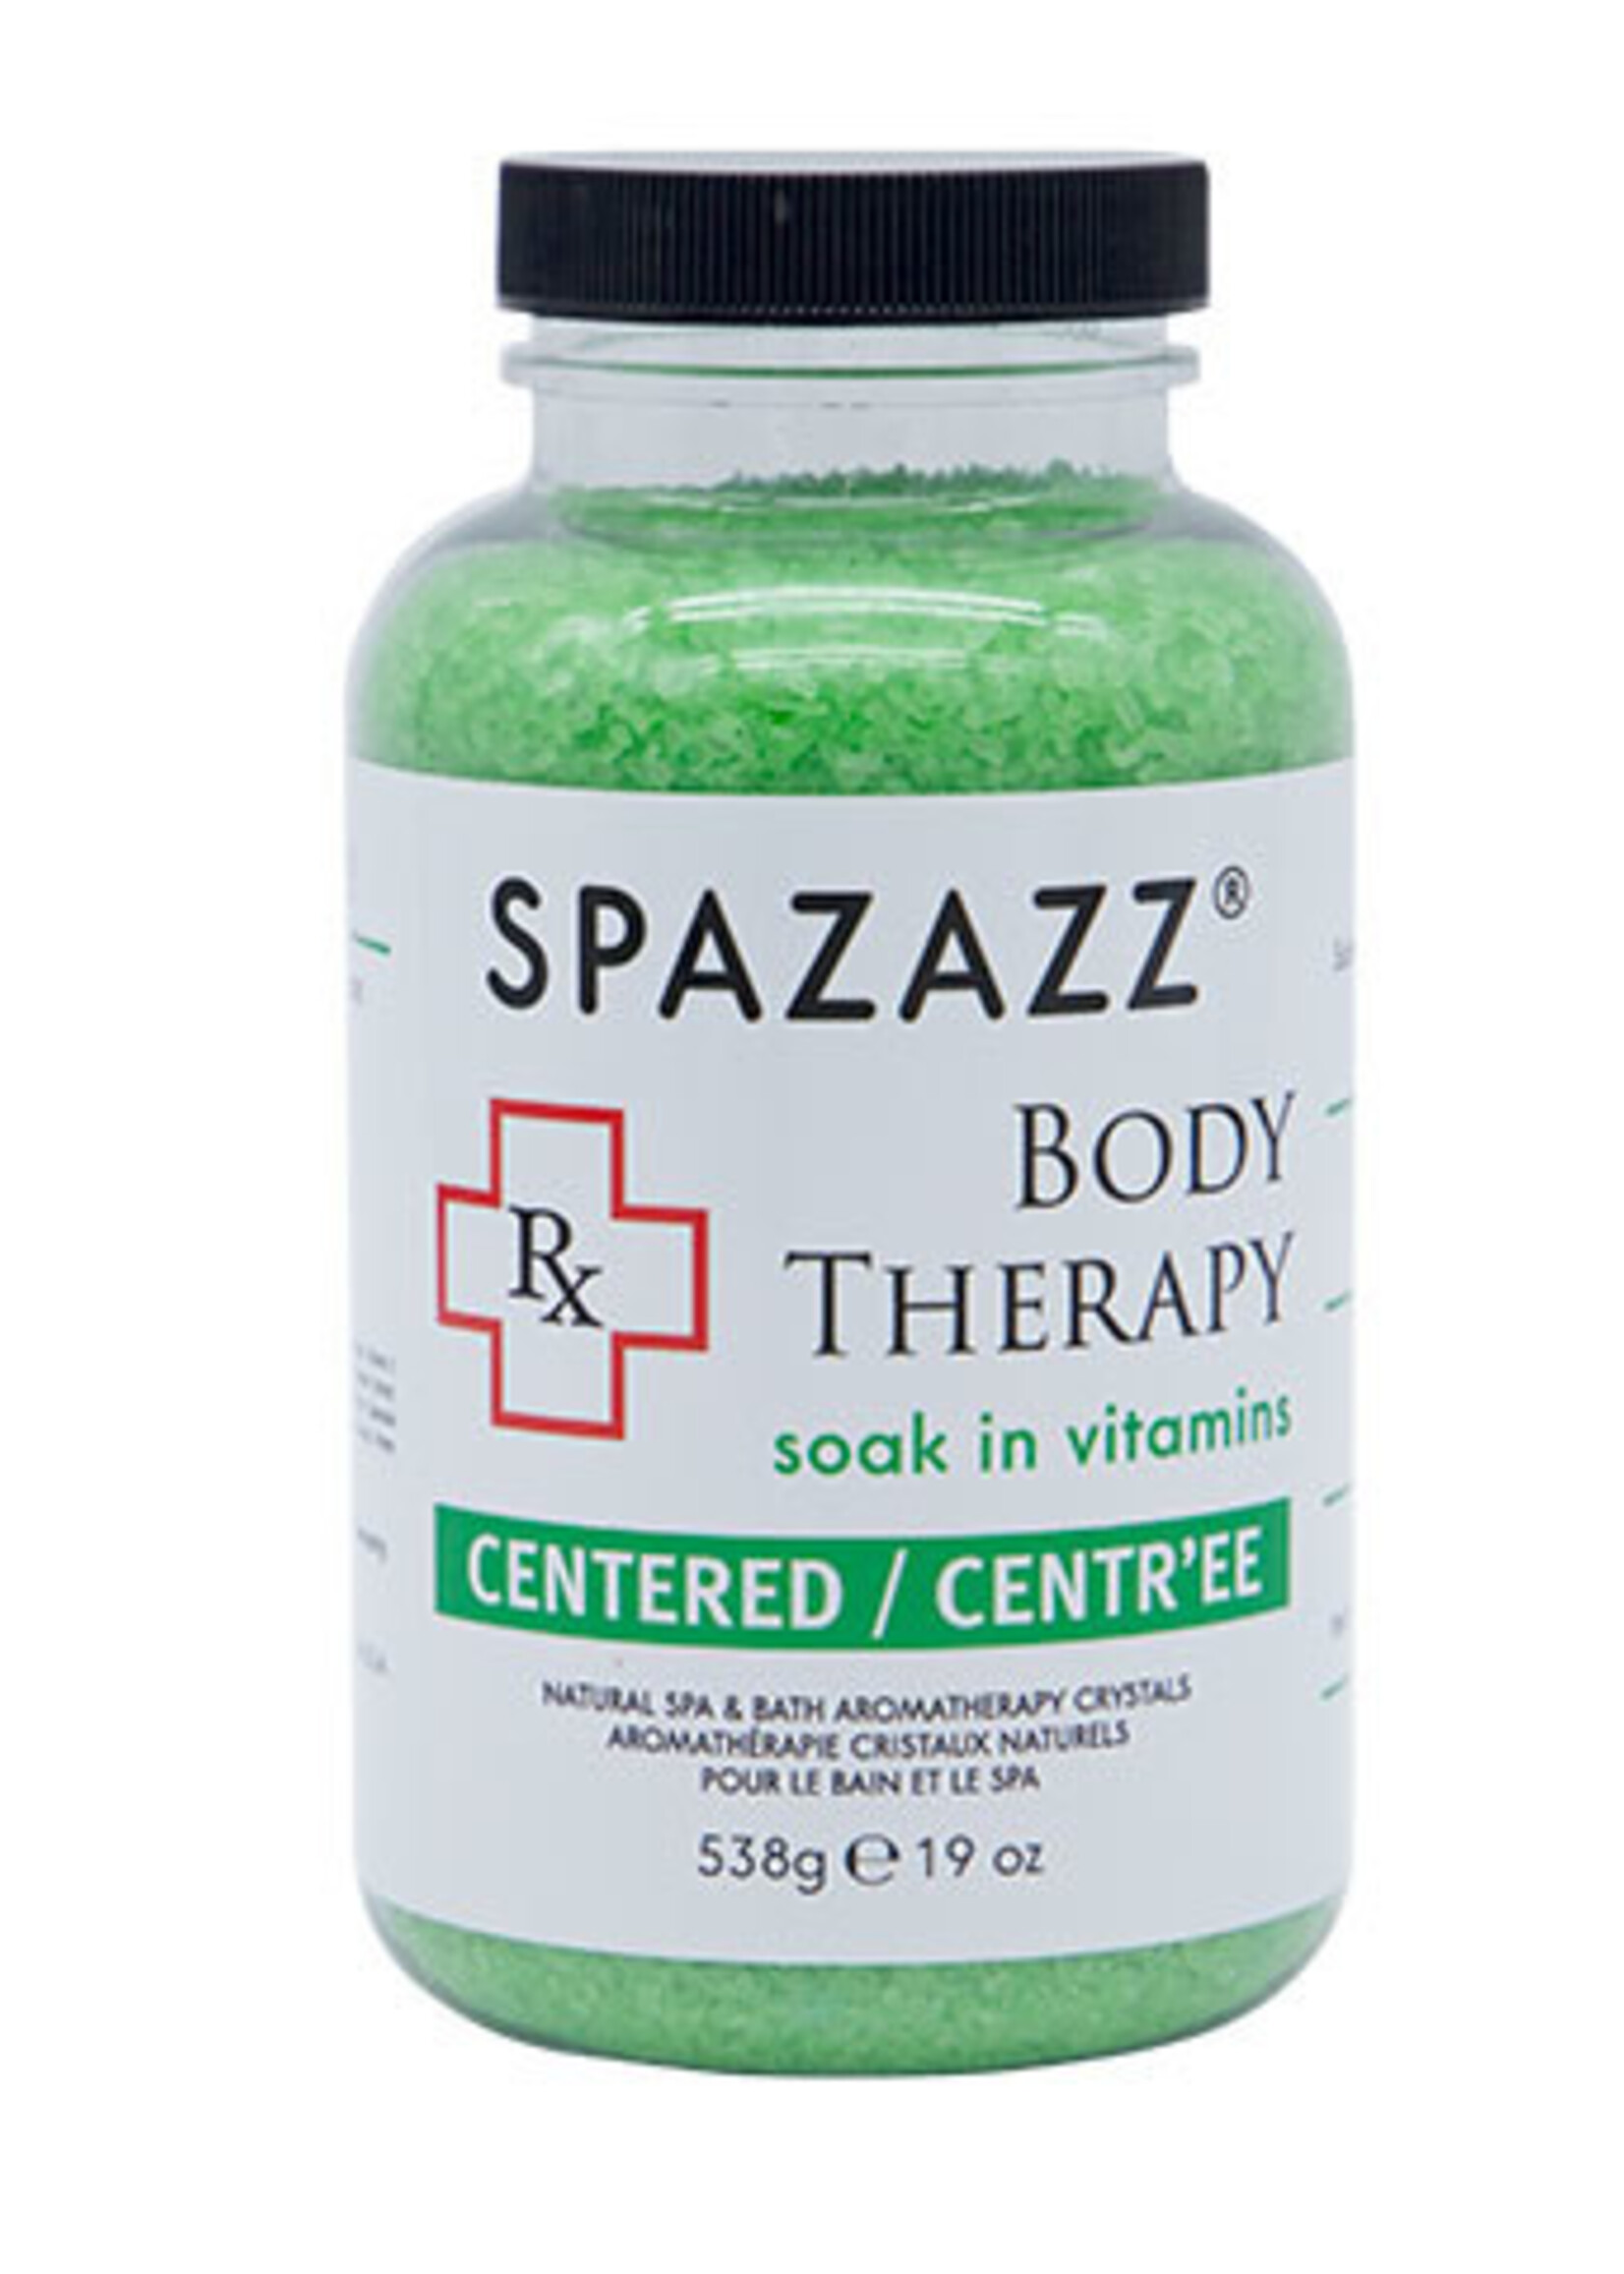 Spazazz Spazazz  Rx  Body Therapy Centered 19Oz